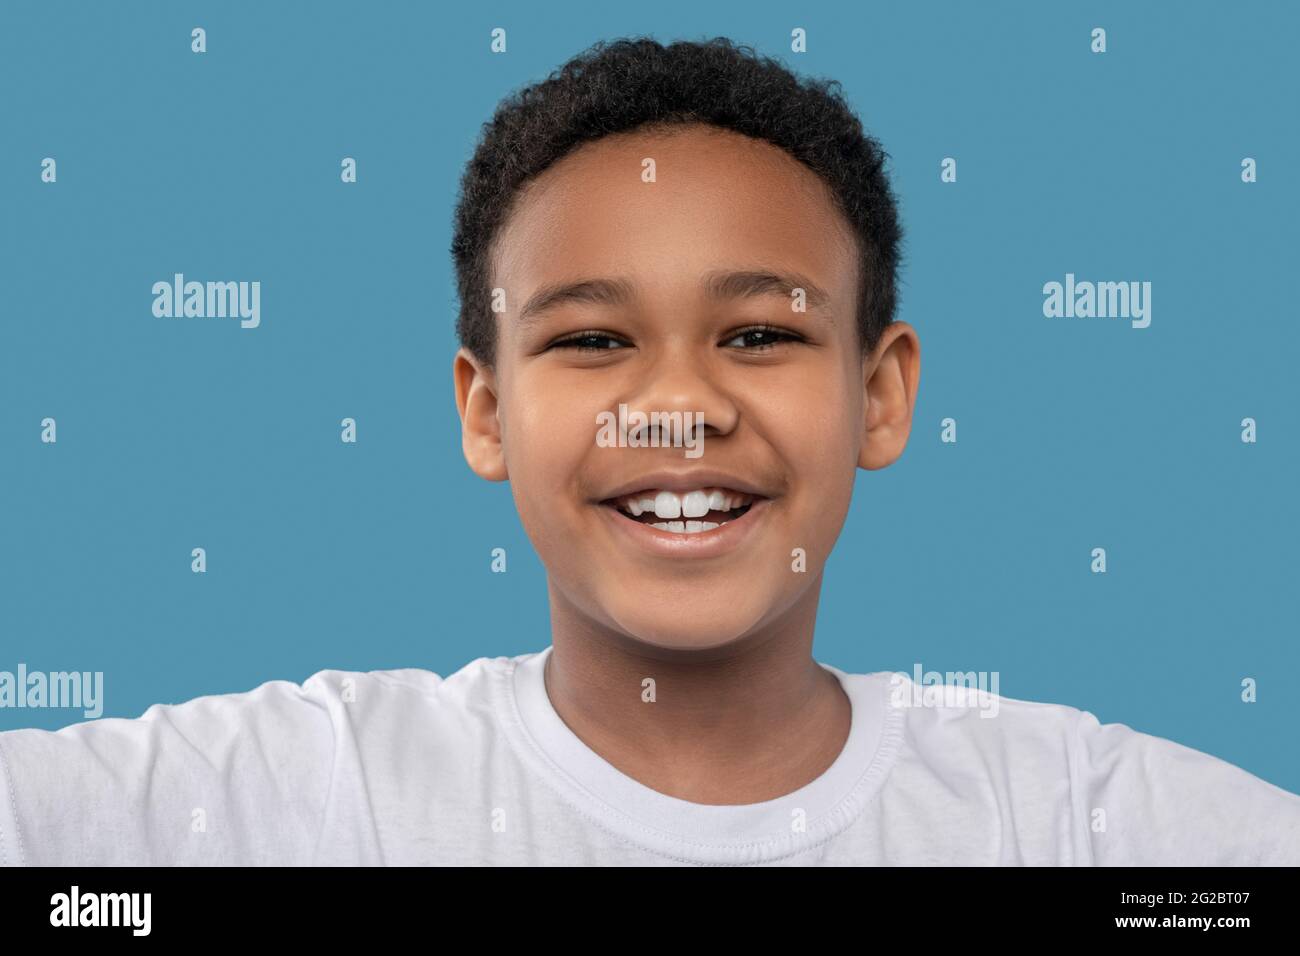 Joyful african american boy with toothy smile Stock Photo